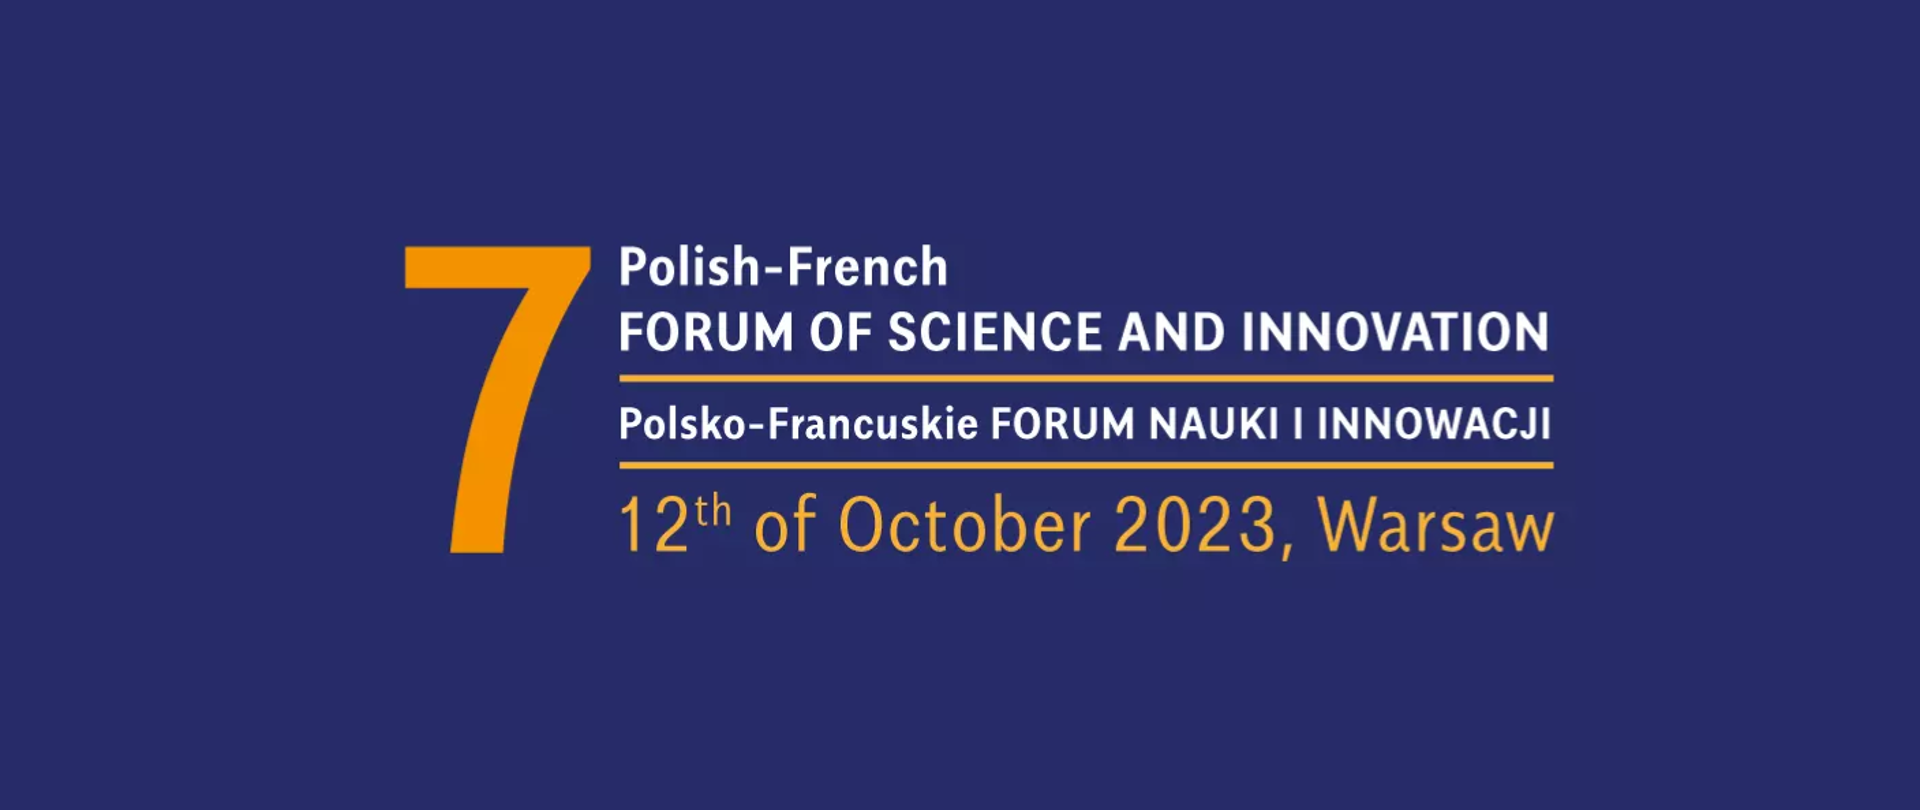 Grafika - na niebieskim tle żółto-biały napis 7. Polish-French Forum of Science and Innovation - polsko-francuskie Forum Nauki i Innowacji.